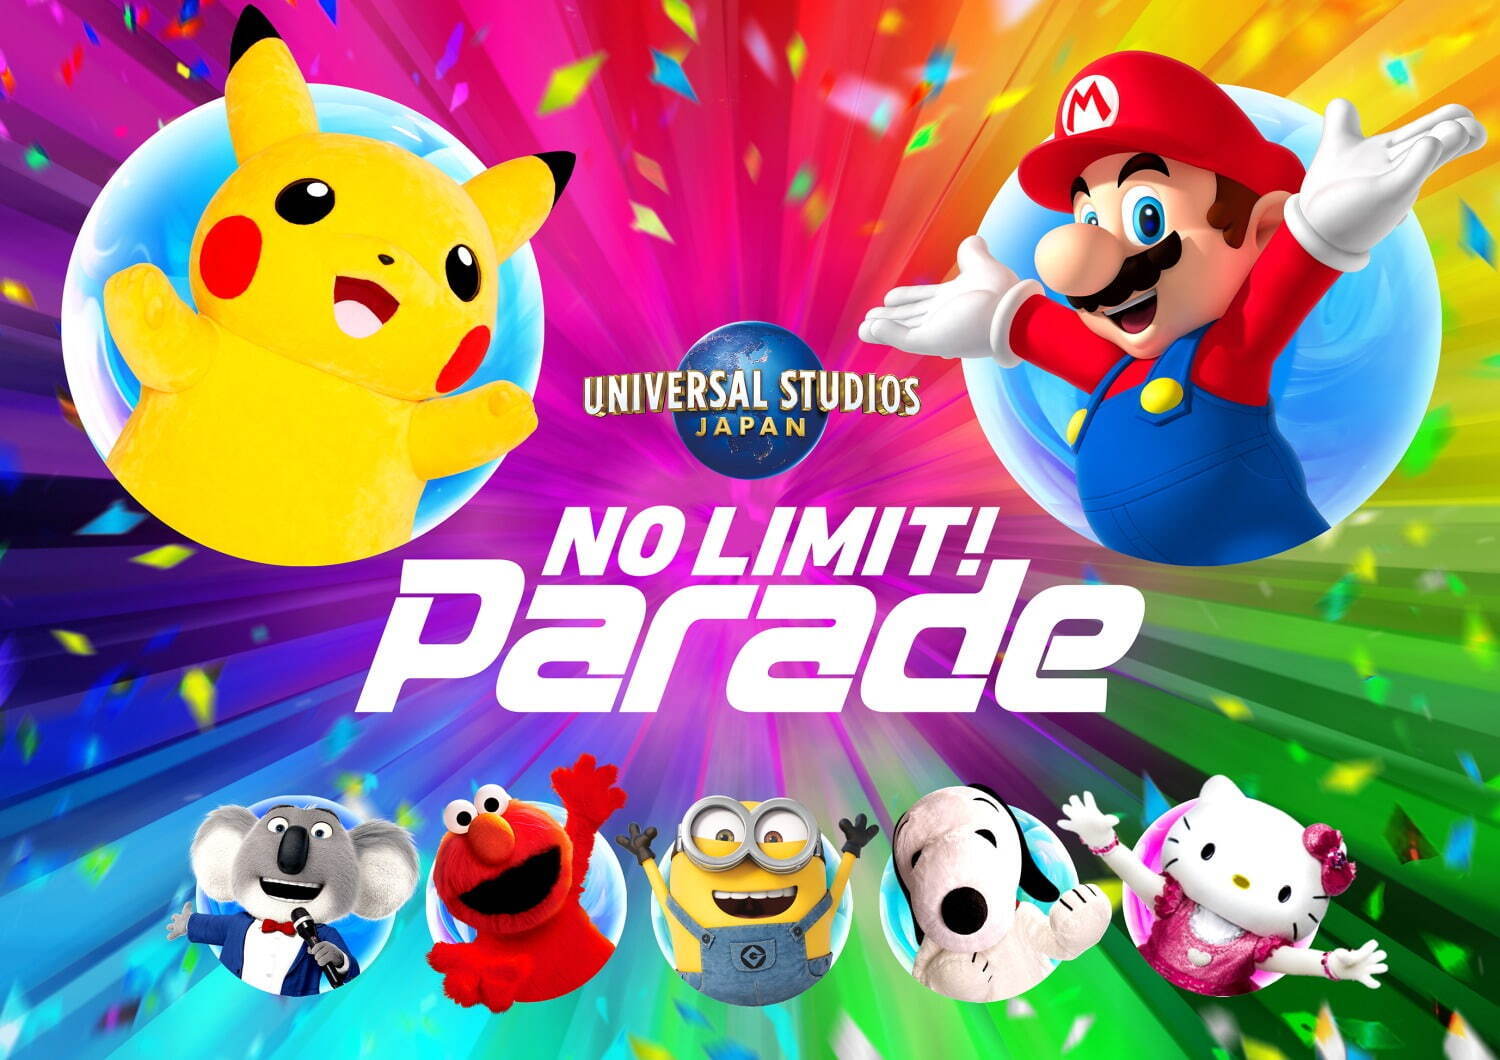 Usj 全員主役 の新パレード No Limit パレード パーク初登場のポケモンやマリオも参加 ファッションプレス